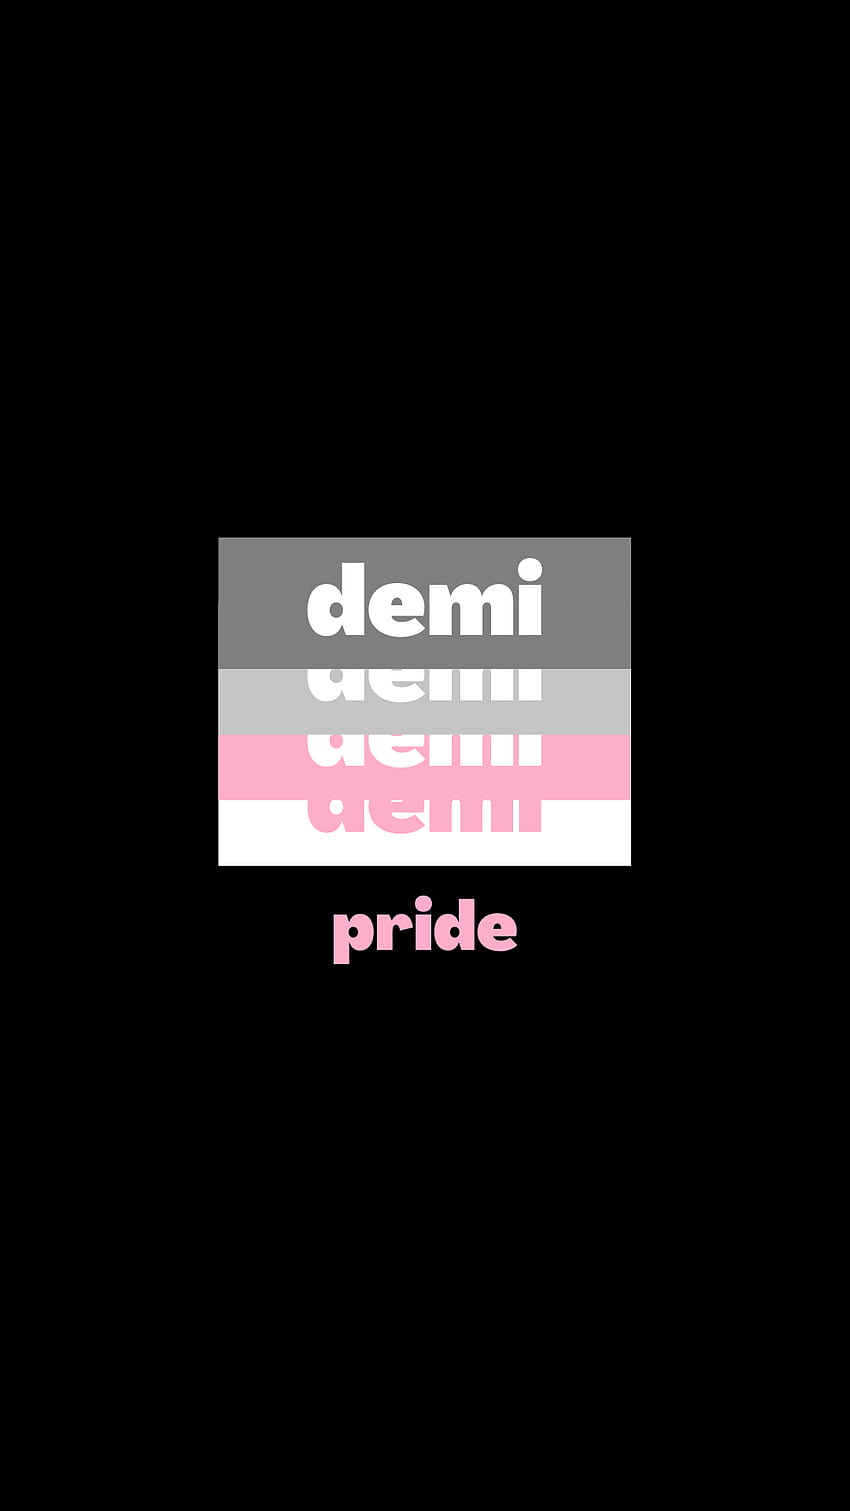 Download Demigirl Flag PDF PNG JPG GIF WebP